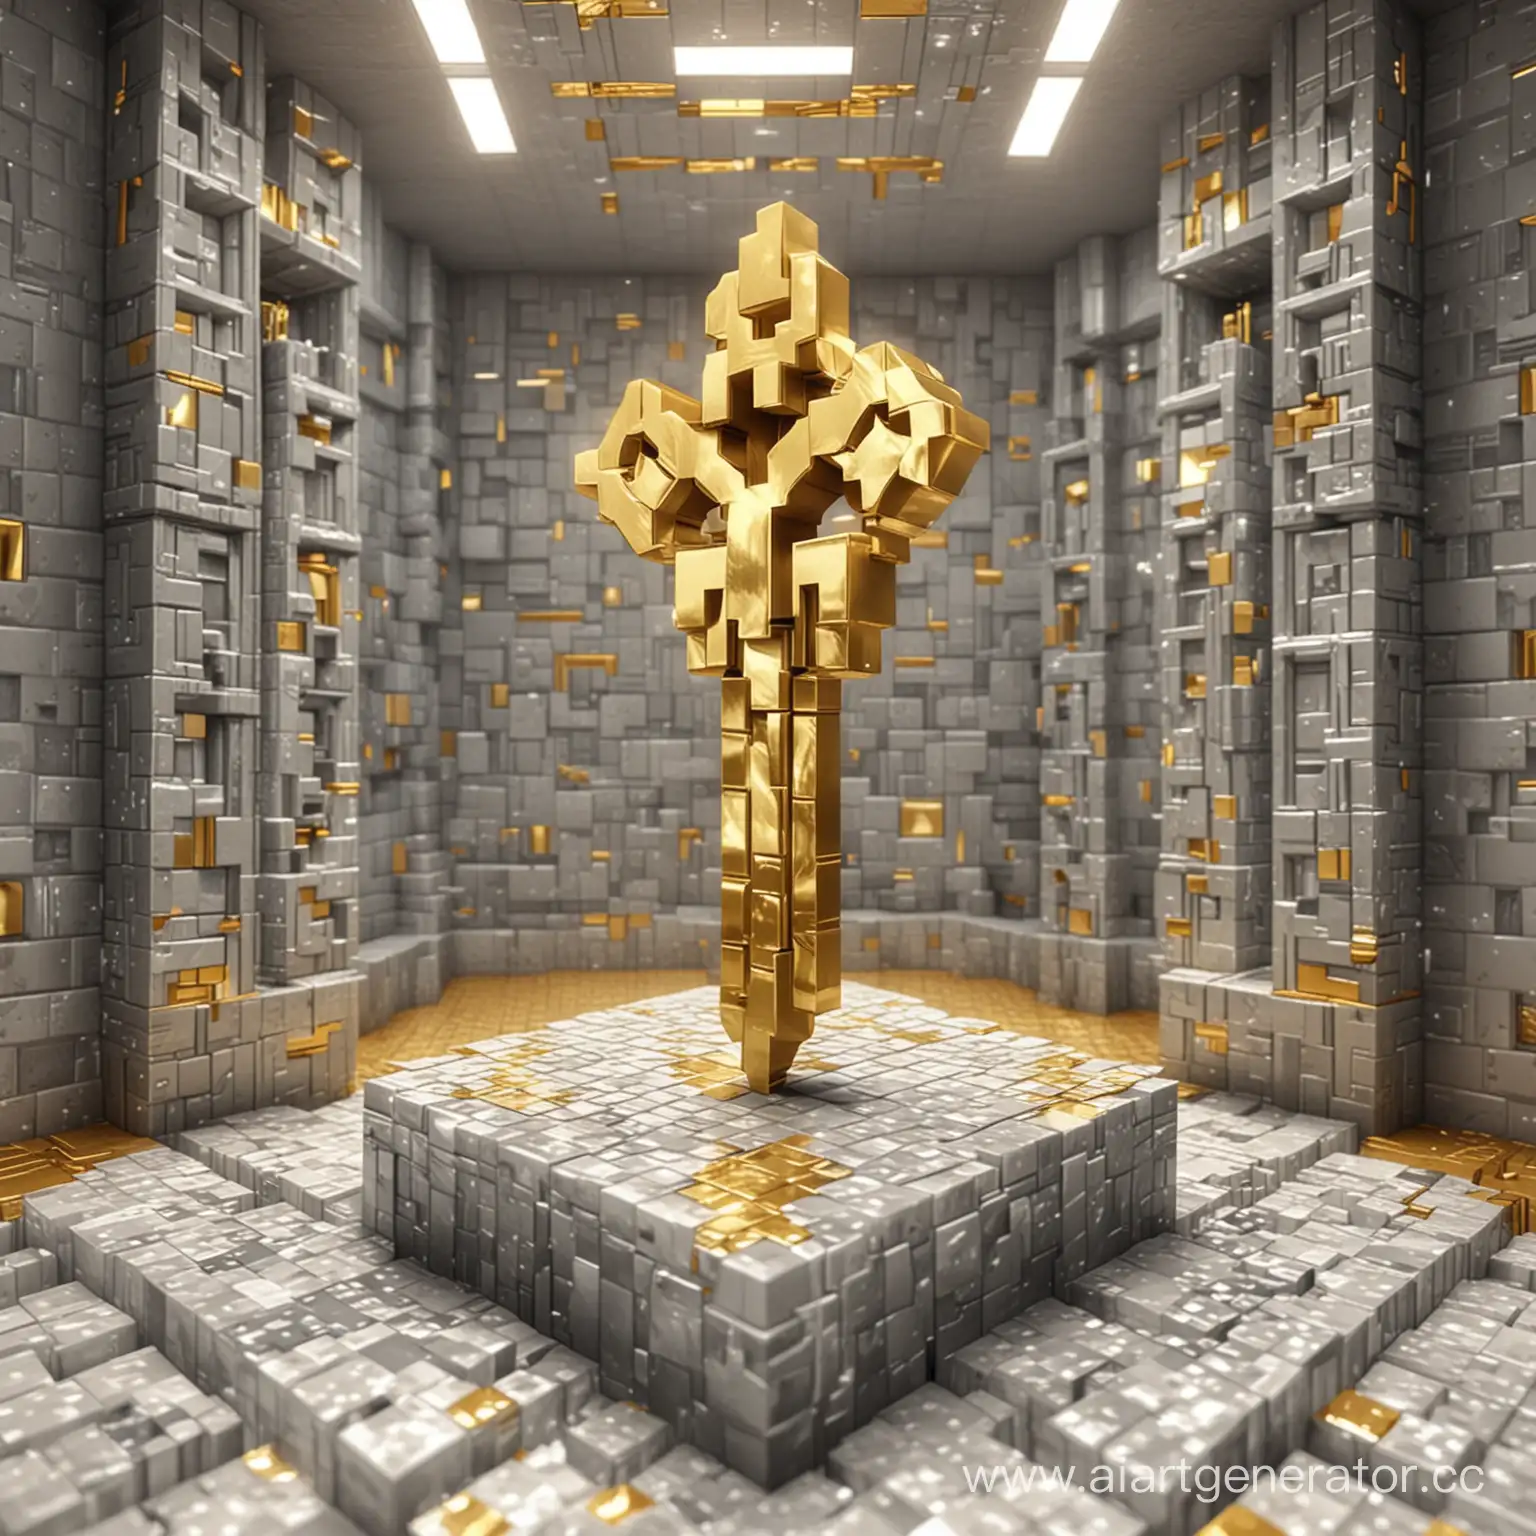 майнкрафт,гаичный ключь золотистого серебреного цвета, стоит в золотой серебреной камнате из кубиков.